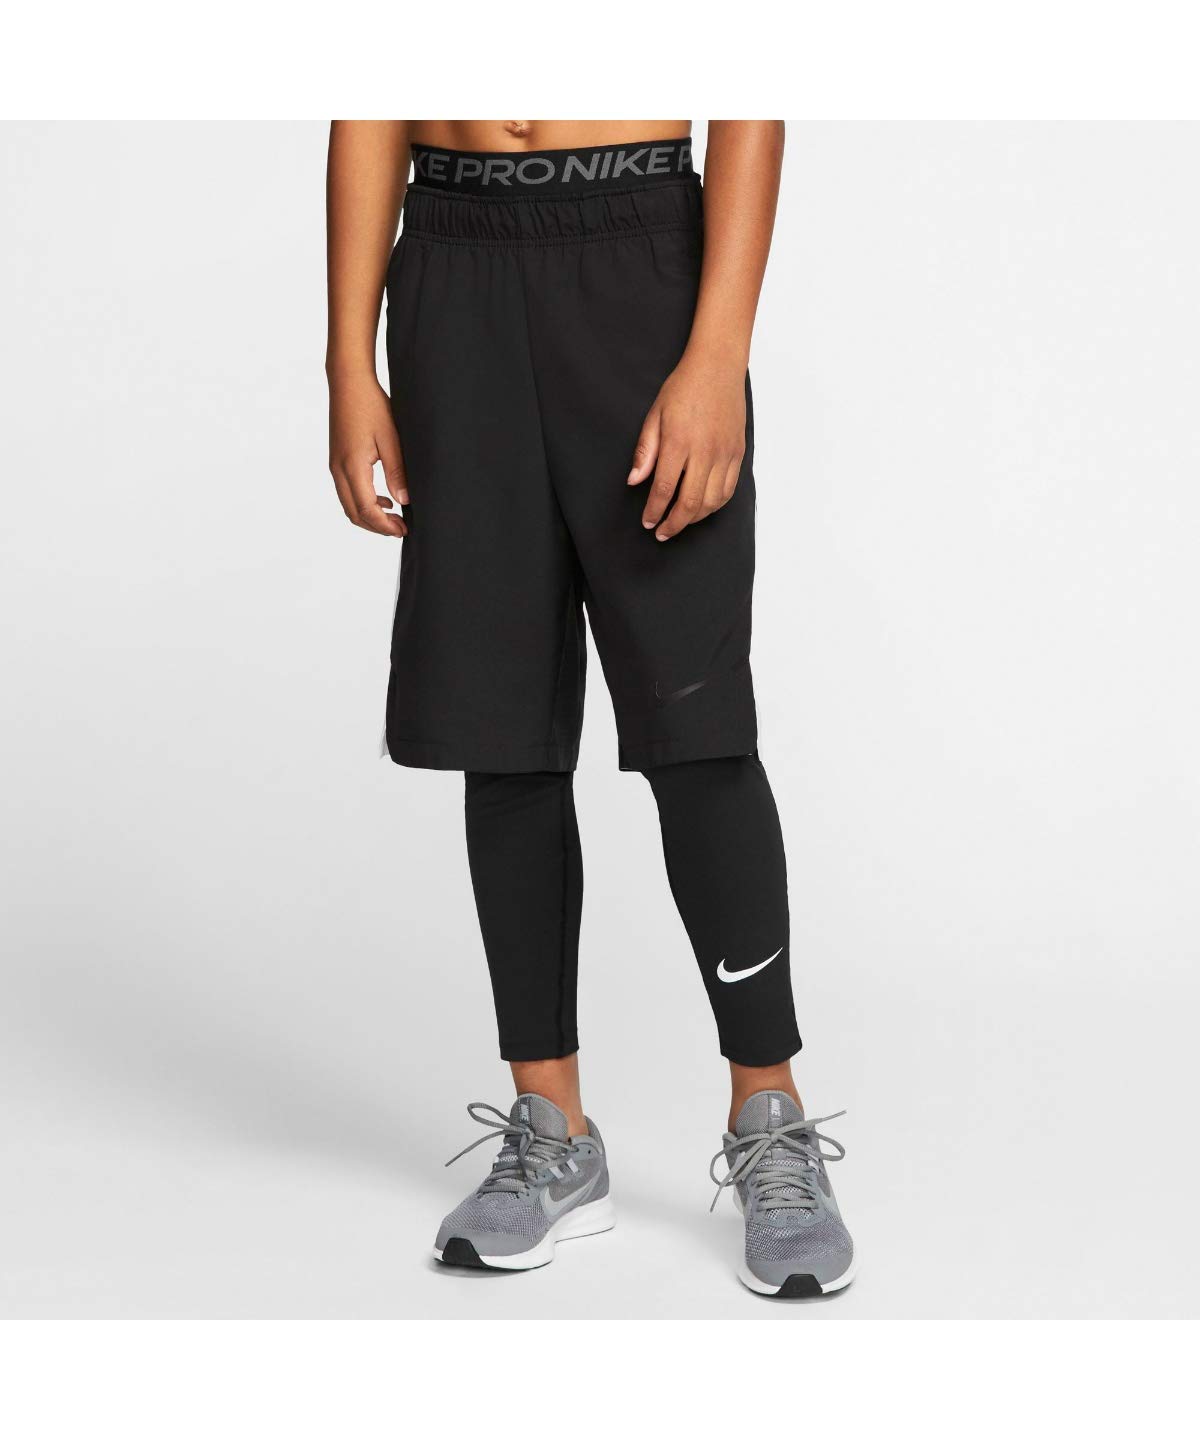 Nike Boys Pro Tight CK4546-010 Size L Black/White